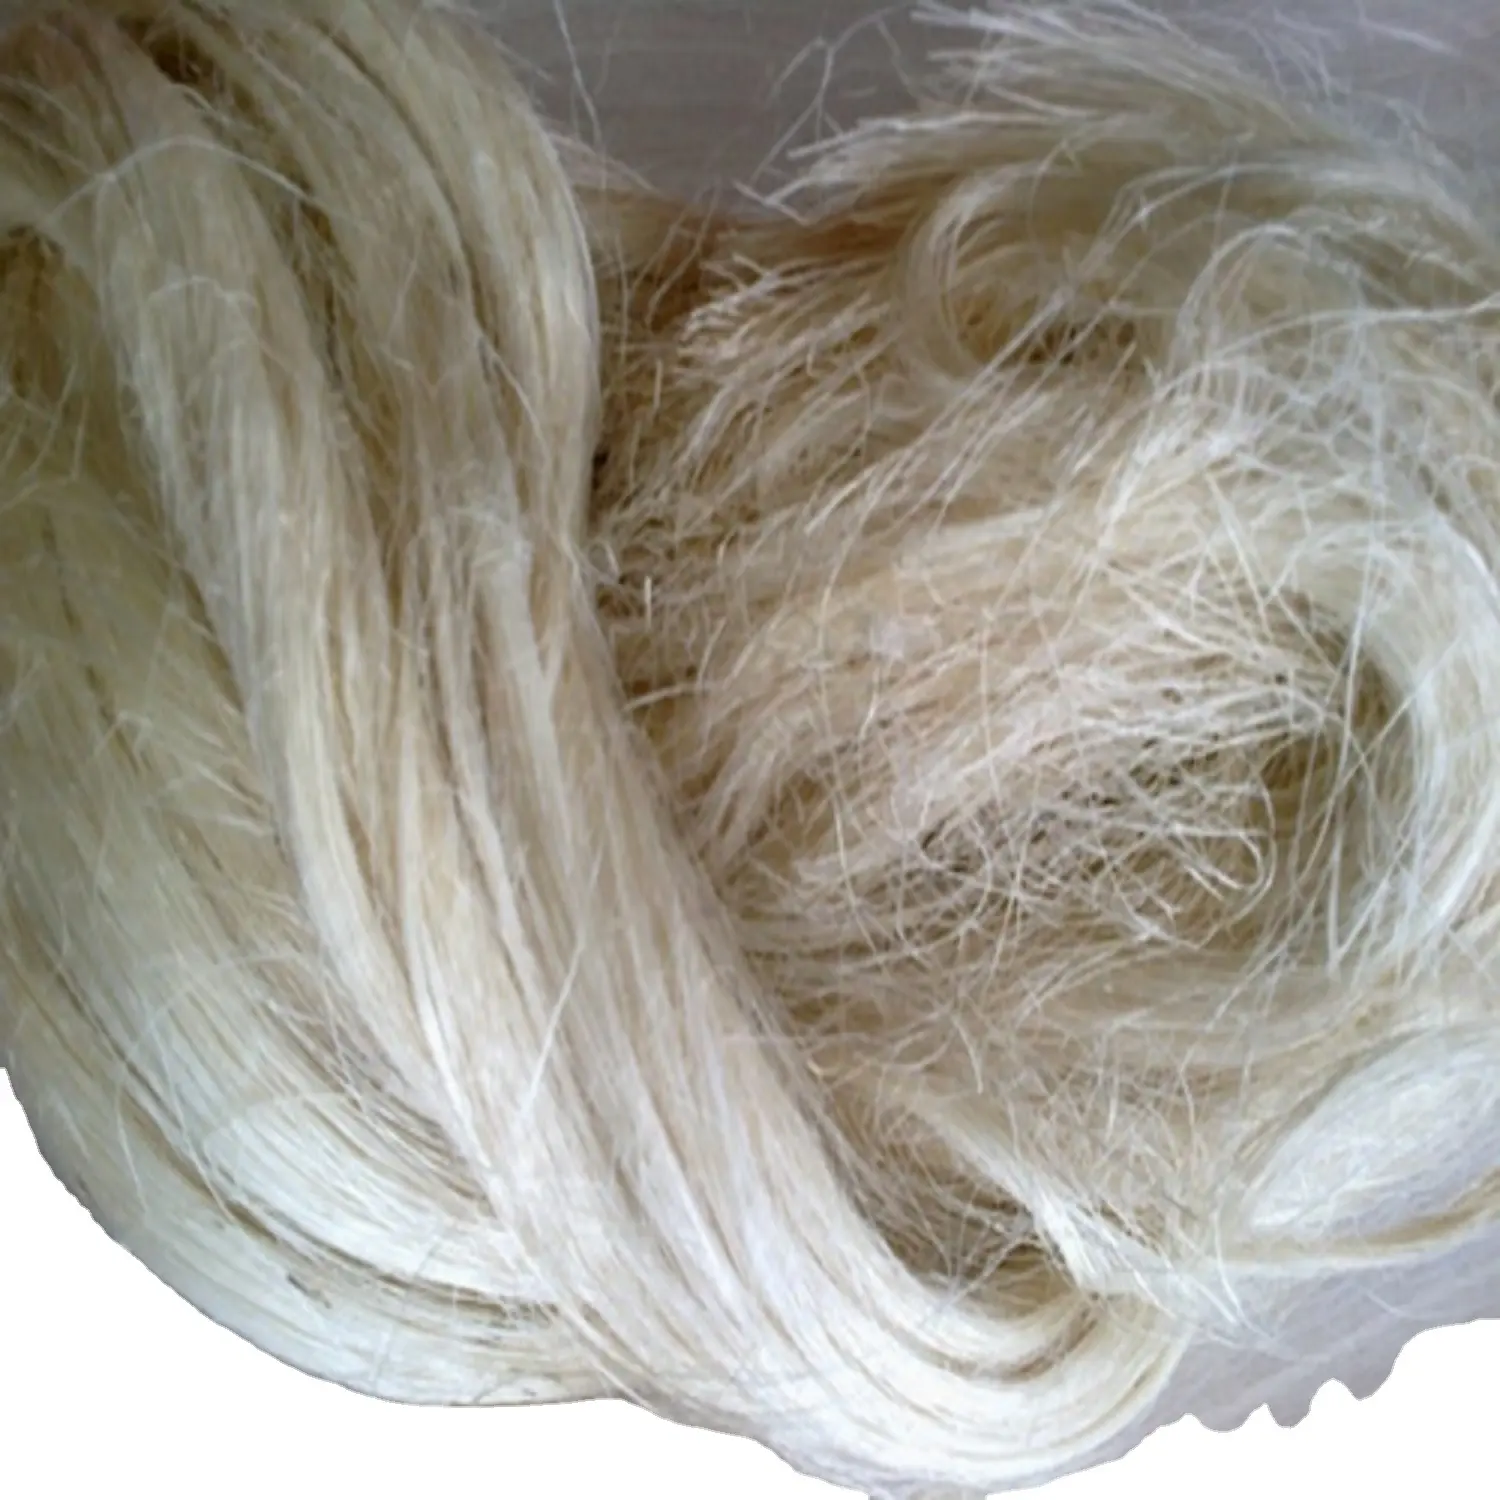 Дешевые продажи качественного сизального волокна Сизаля натурального качества сизального волокна для экспорта